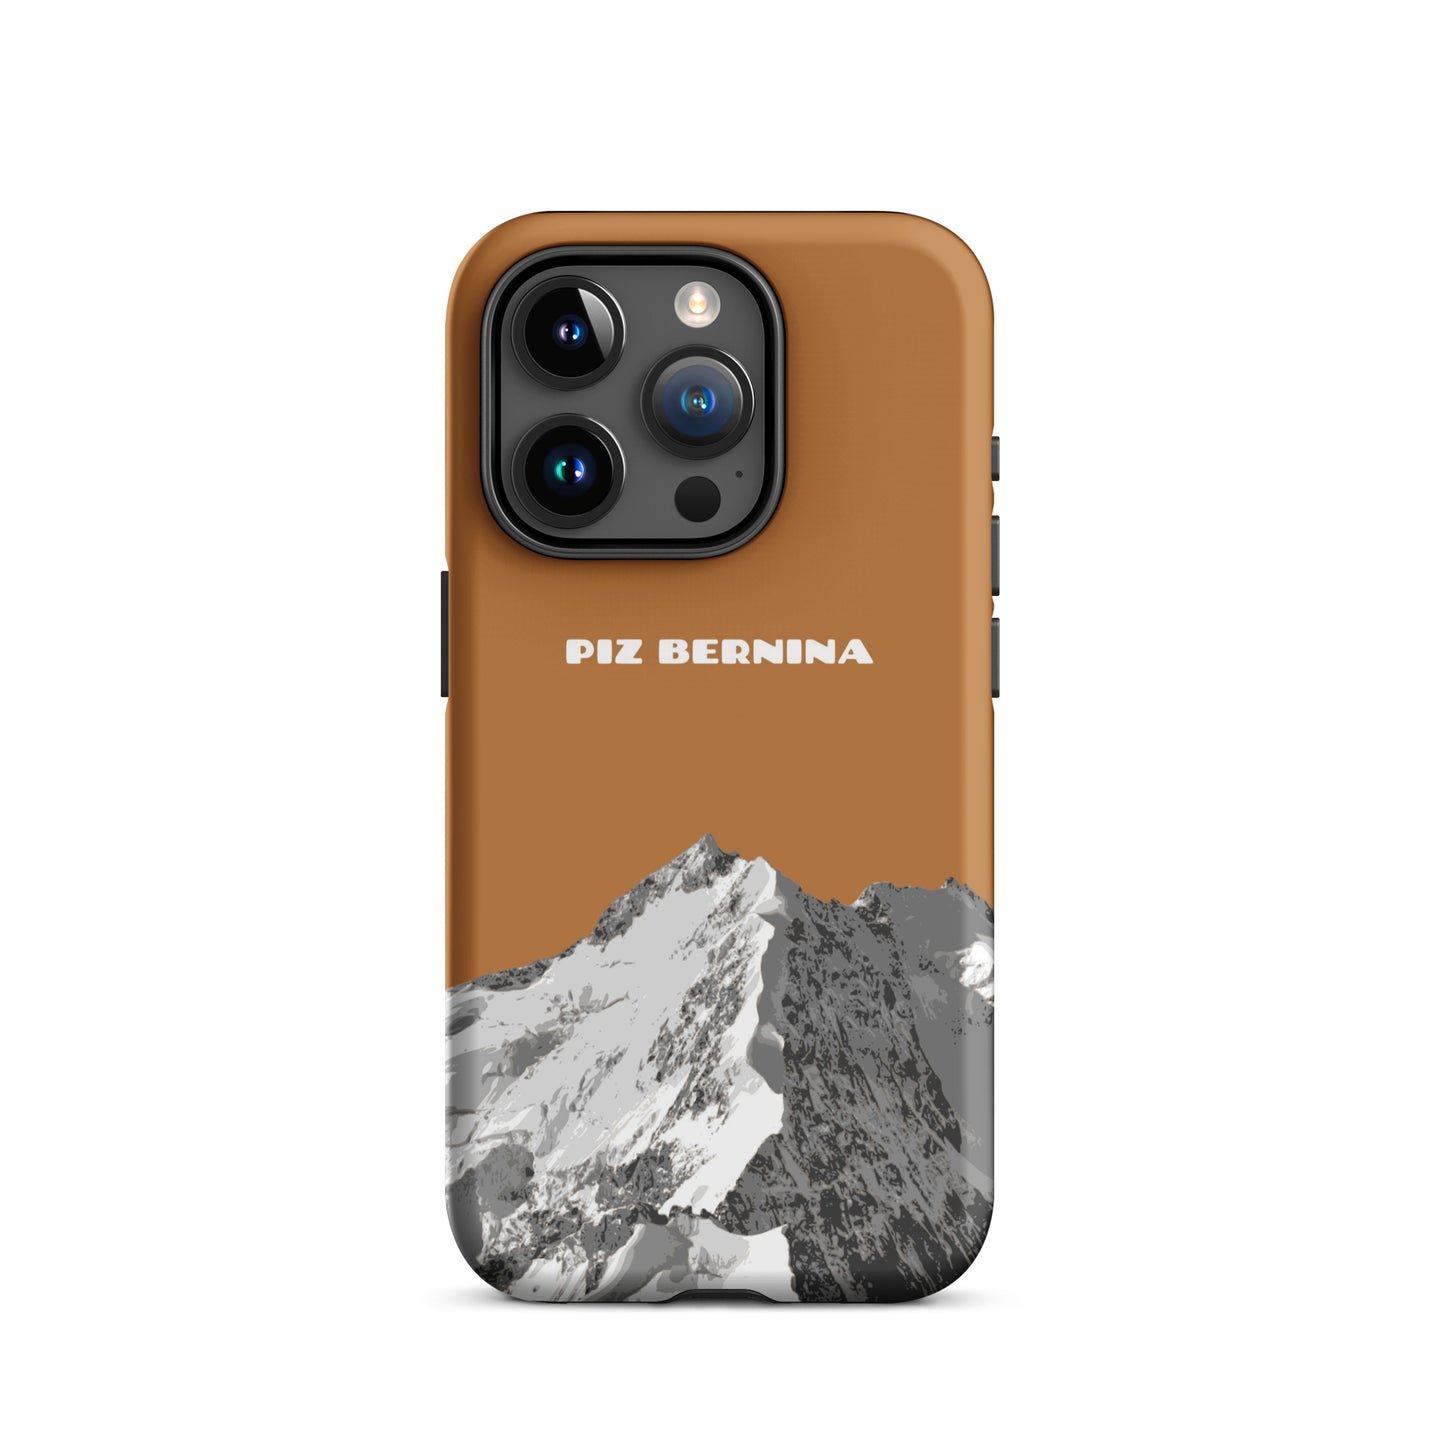 Hülle für das iPhone 15 Pro von Apple in der Farbe Kupfer, dass den Piz Bernina in Graubünden zeigt.